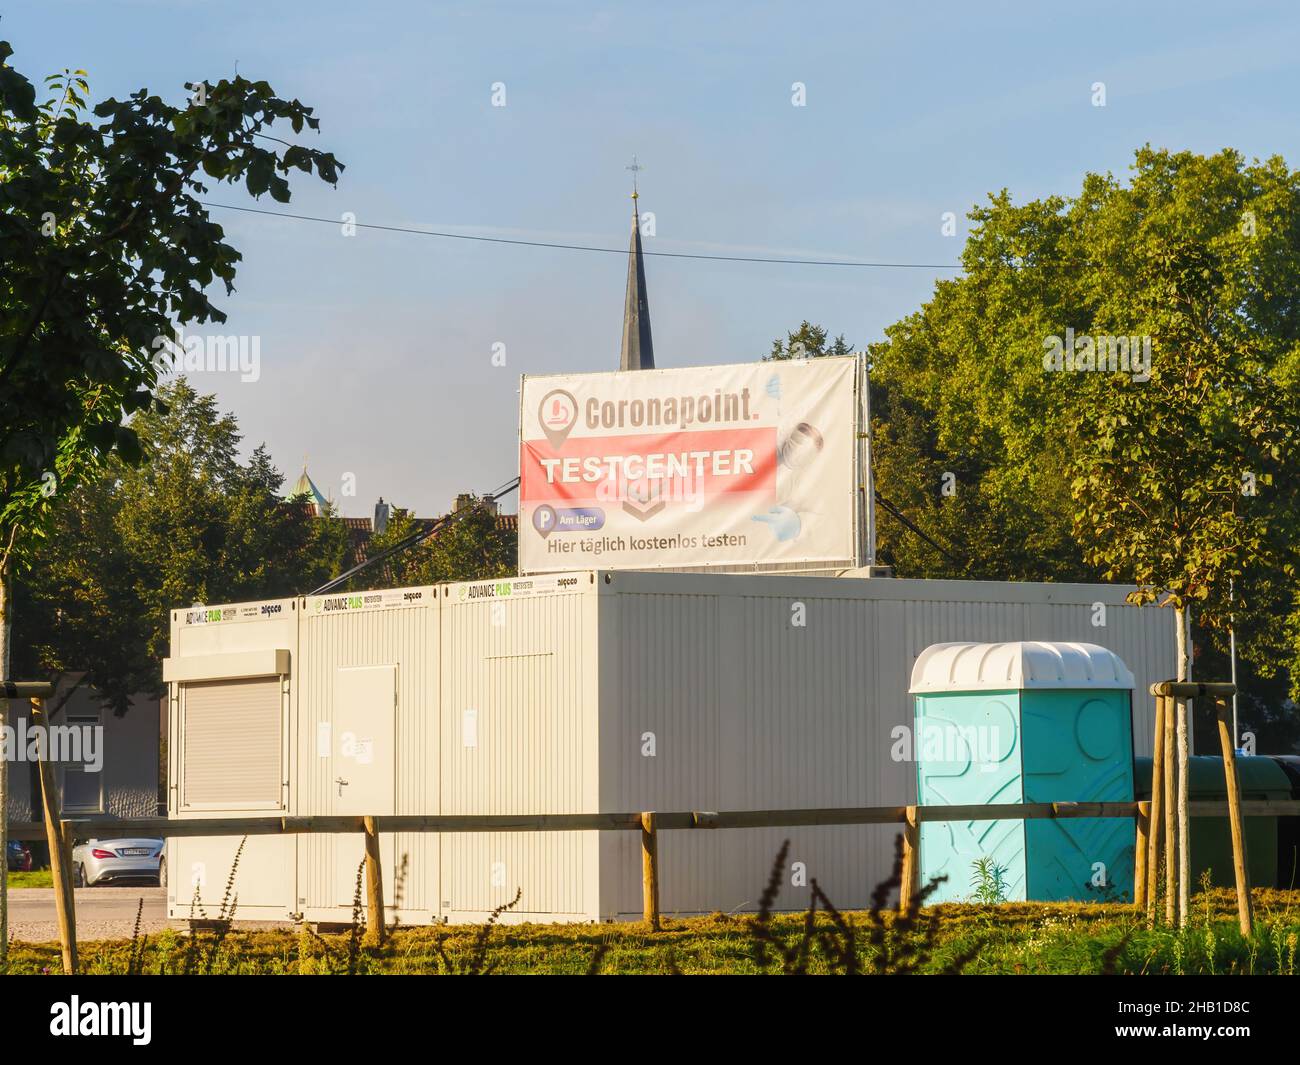 Coronapoint Testcenter nella città tedesca di Kehl con guglia curch sullo sfondo Foto Stock